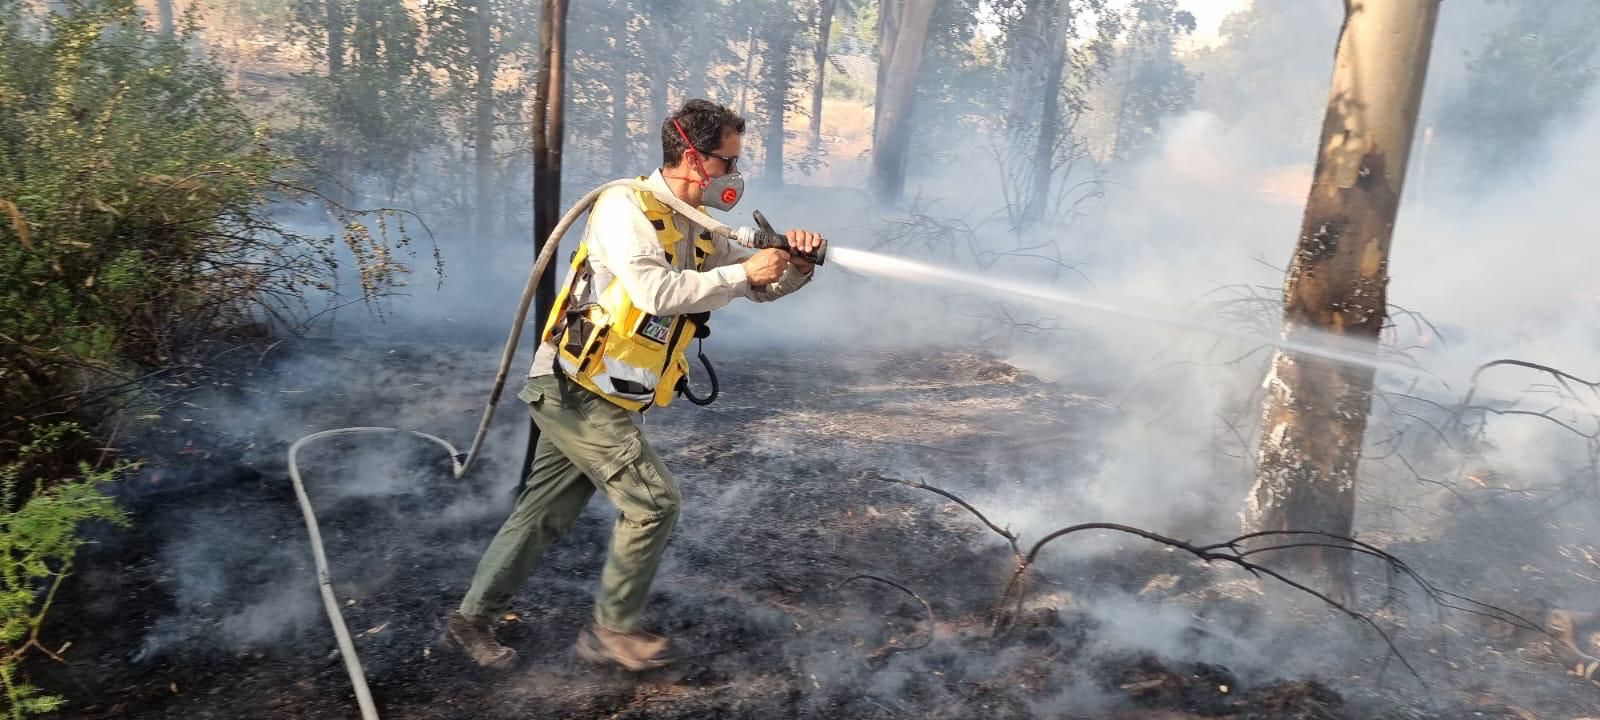 בעקבות גל החום הכבד קק”ל: לא להדליק אש בפארקים וביערות